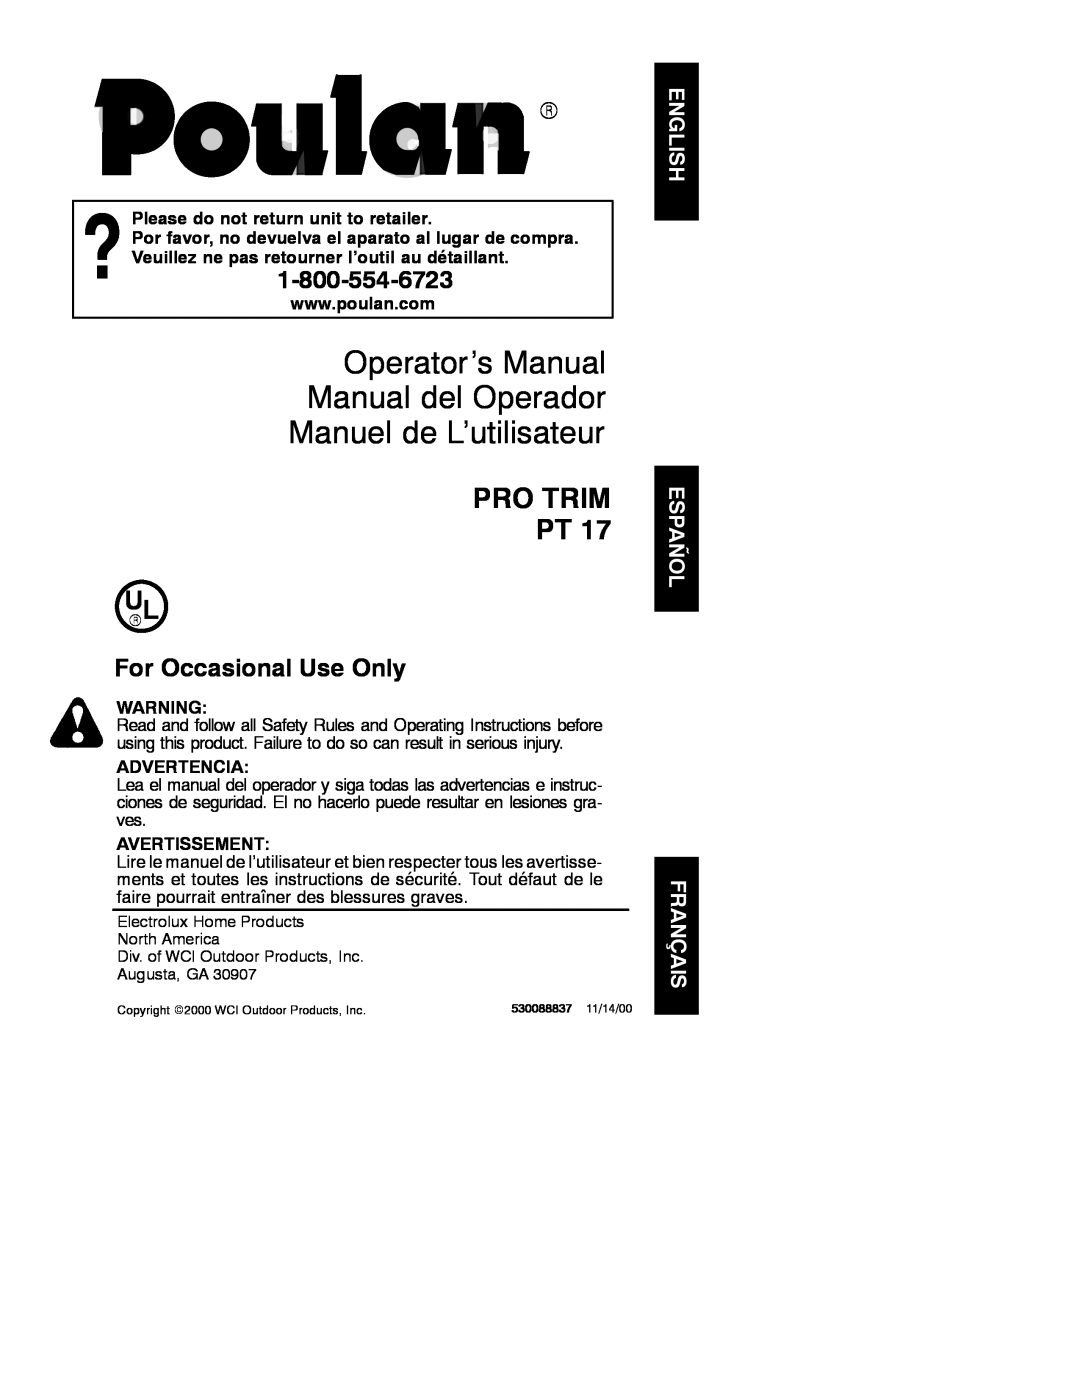 Poulan PRO TRIM PT 17 manual Operator’s Manual Manual del Operador, Manuel de L’utilisateur, Pro Trim Pt, Advertencia 